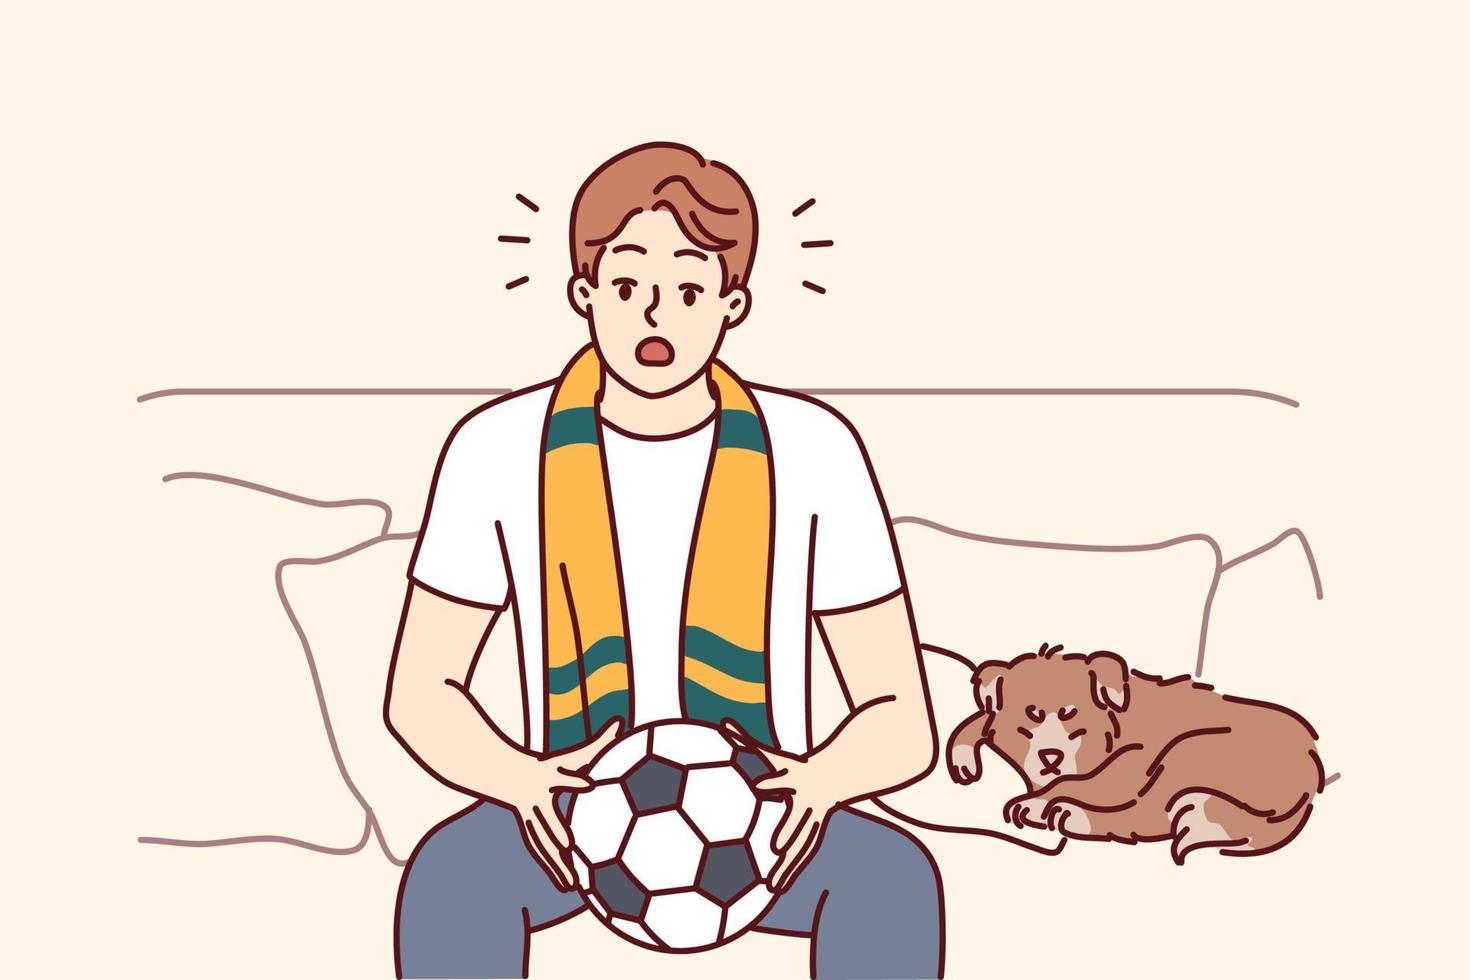 joven hombre sentar en sofá acecho fútbol americano juego a hogar. masculino deporte ventilador con pelota en manos disfrutar partido adentro. vector ilustración.